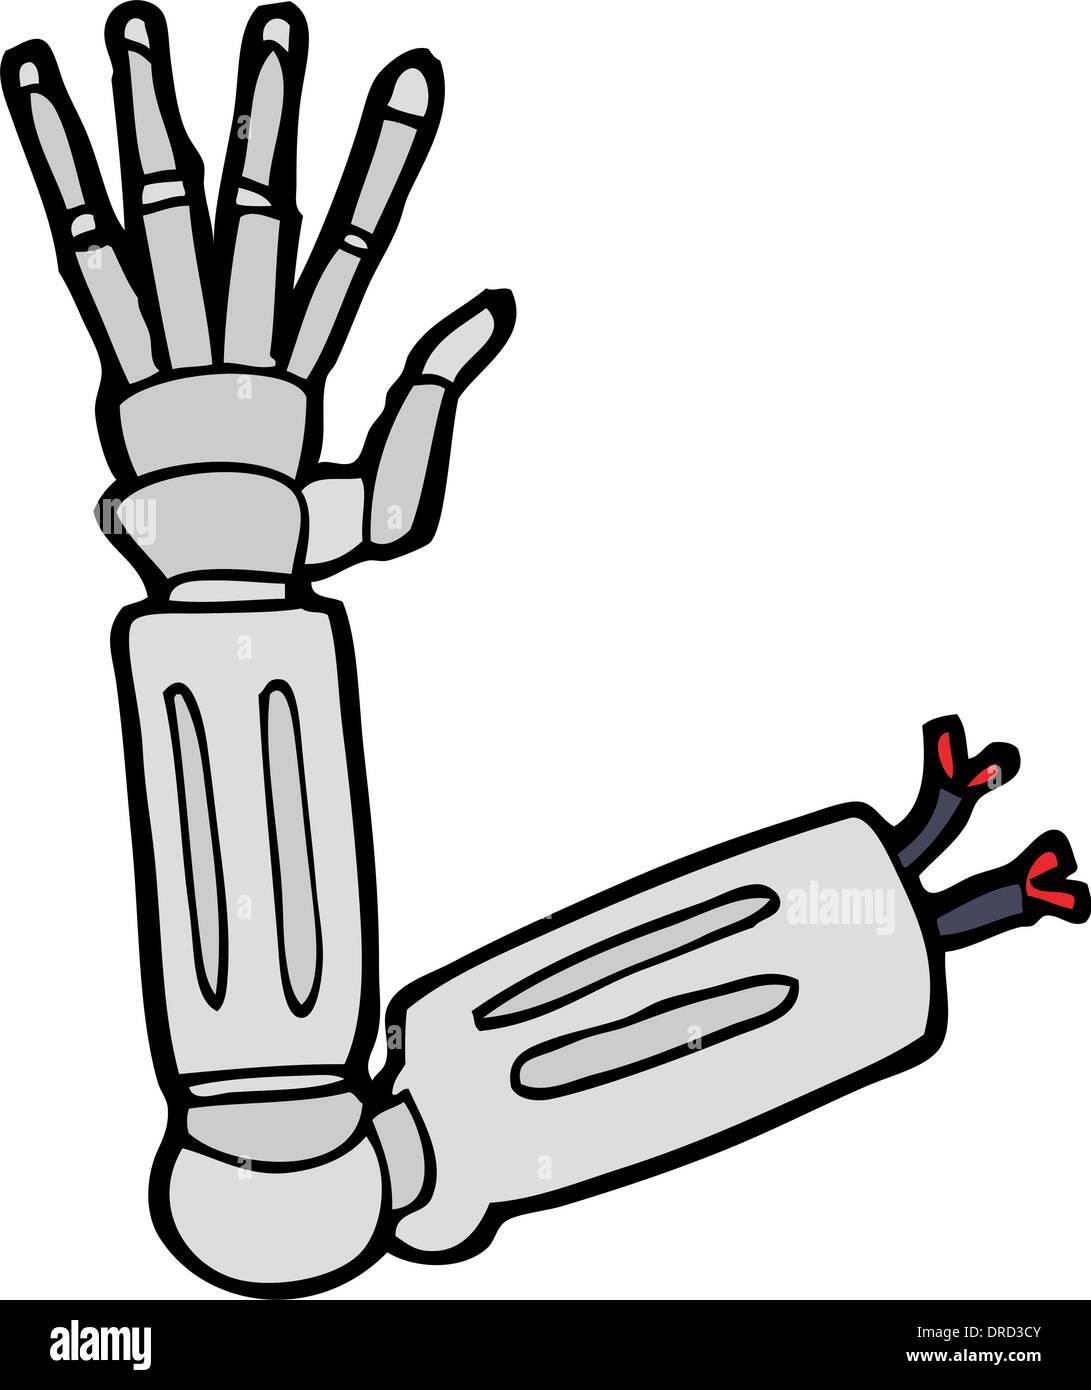 cartoon robot arm Stock Vector Image & Art - Alamy